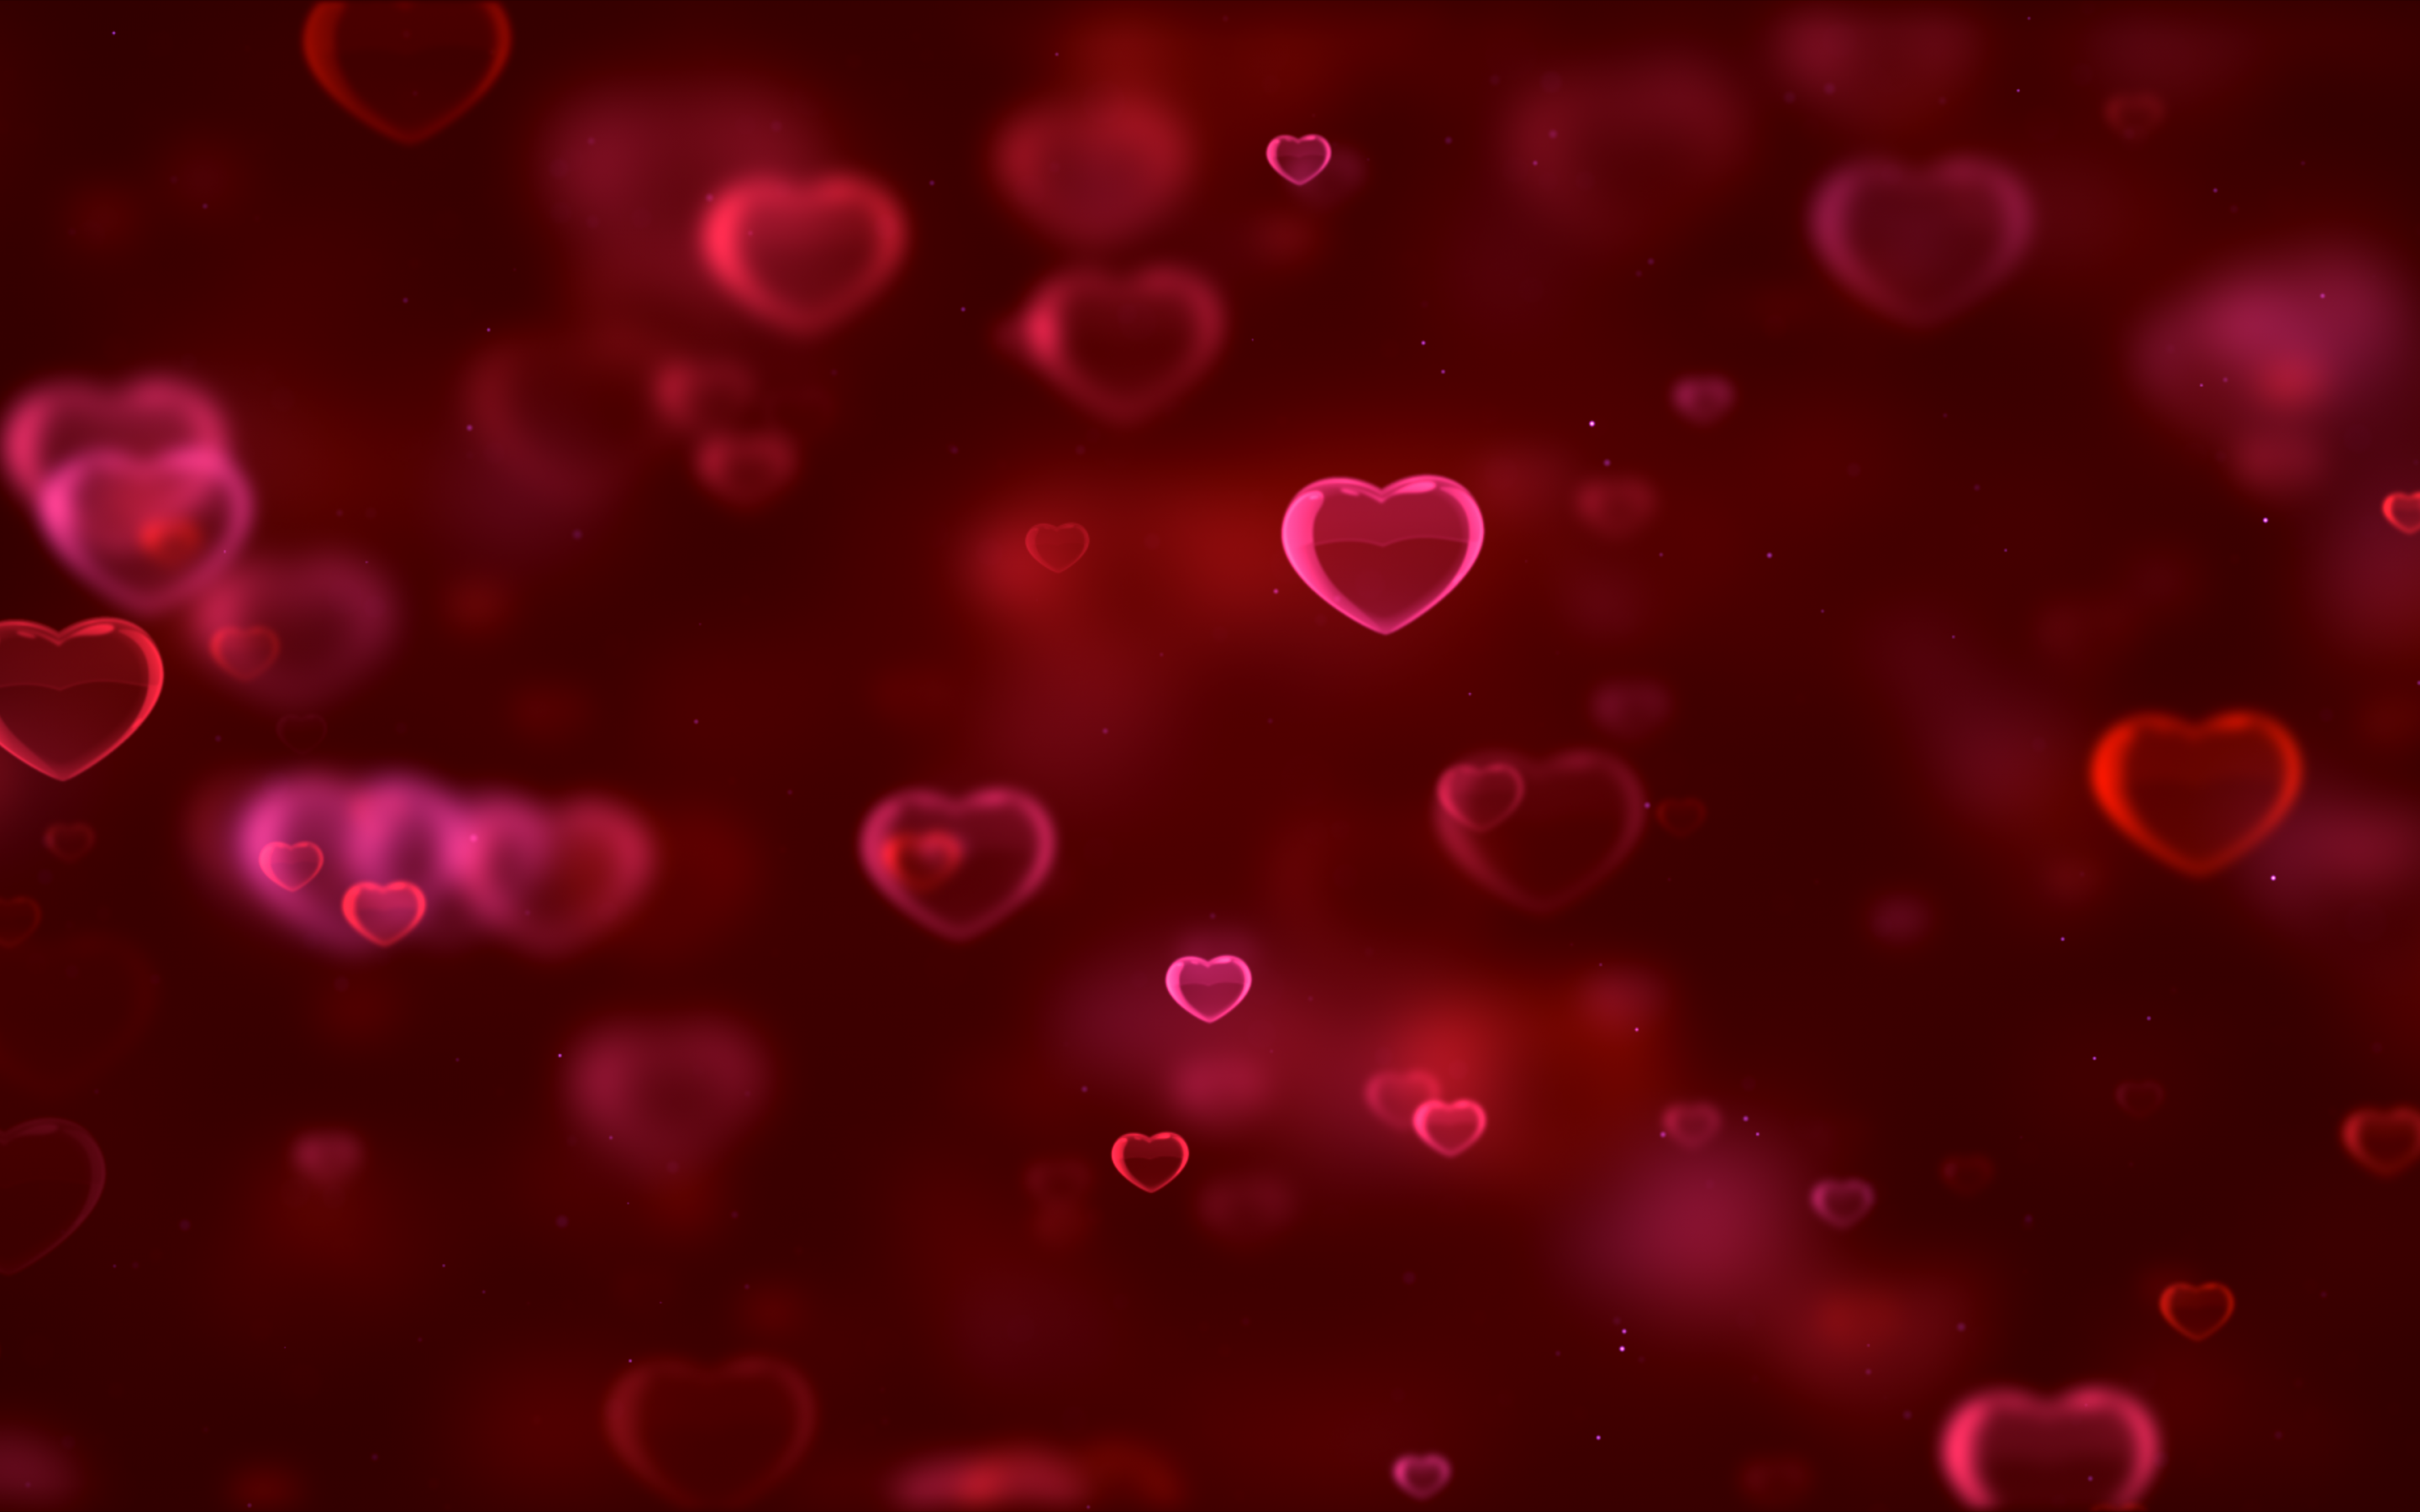 Nếu bạn đang tìm kiếm một hình nền đặc biệt để thể hiện tình cảm của mình, hình nền đỏ trái tim sẽ là sự lựa chọn hoàn hảo. Chúng sẽ mang đến một cảm giác ấm áp và lãng mạn cho màn hình của bạn, và người nhìn sẽ cảm thấy ngọt ngào.